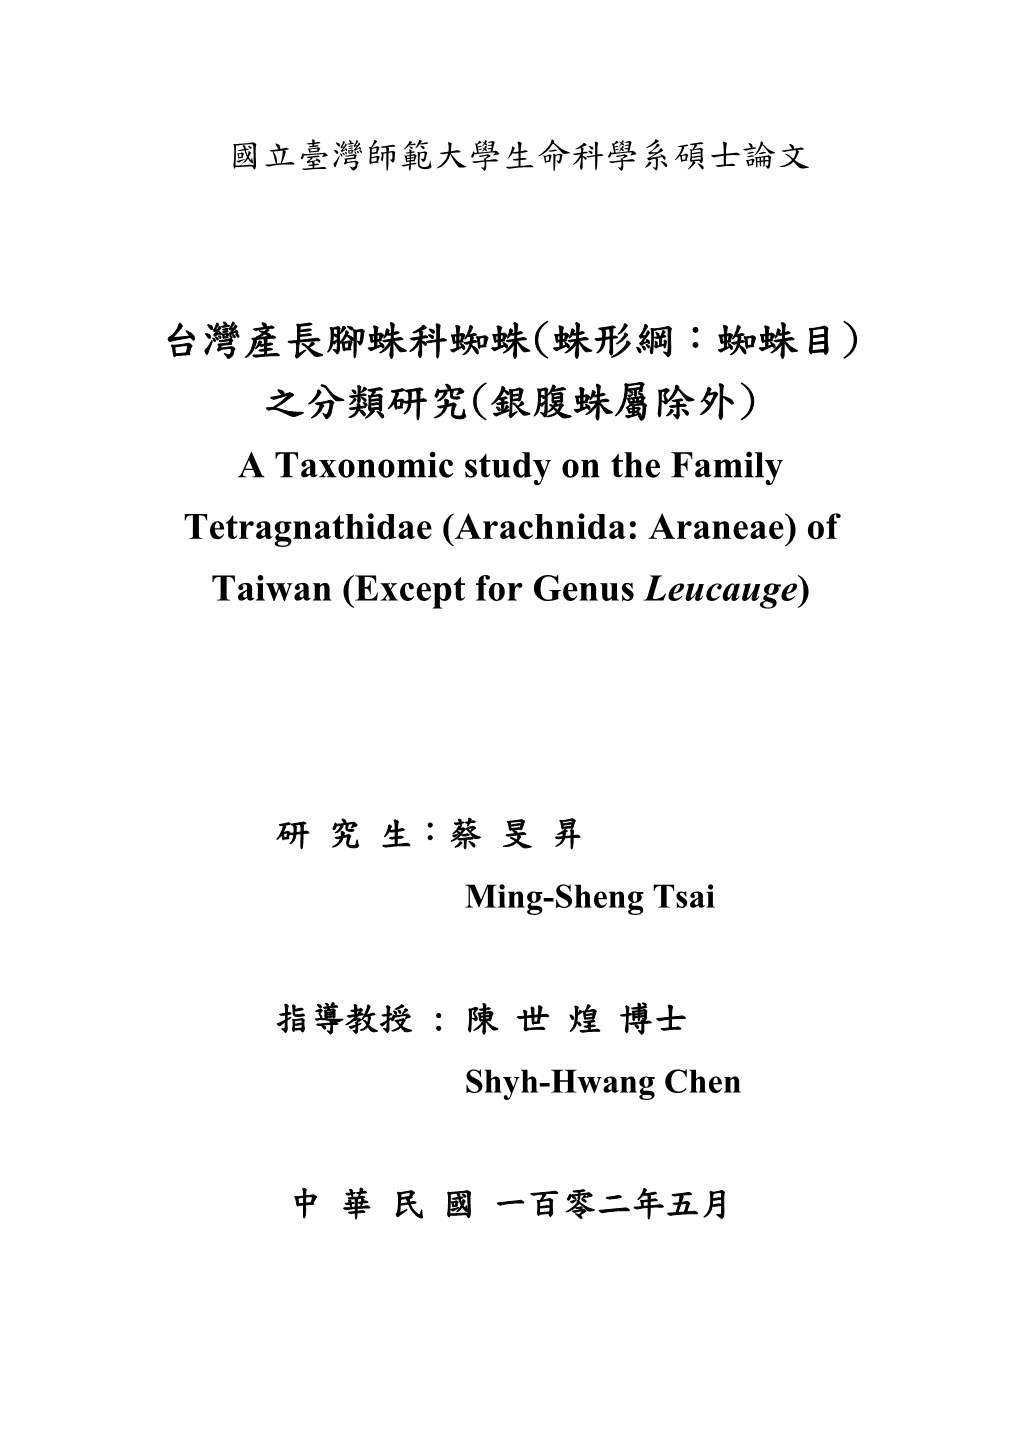 台灣產長腳蛛科蜘蛛(蛛形綱：蜘蛛目) 之分類研究(銀腹蛛屬除外) a Taxonomic Study on the Family Tetragnathidae (Arachnida: Araneae) of Taiwan (Except for Genus Leucauge)